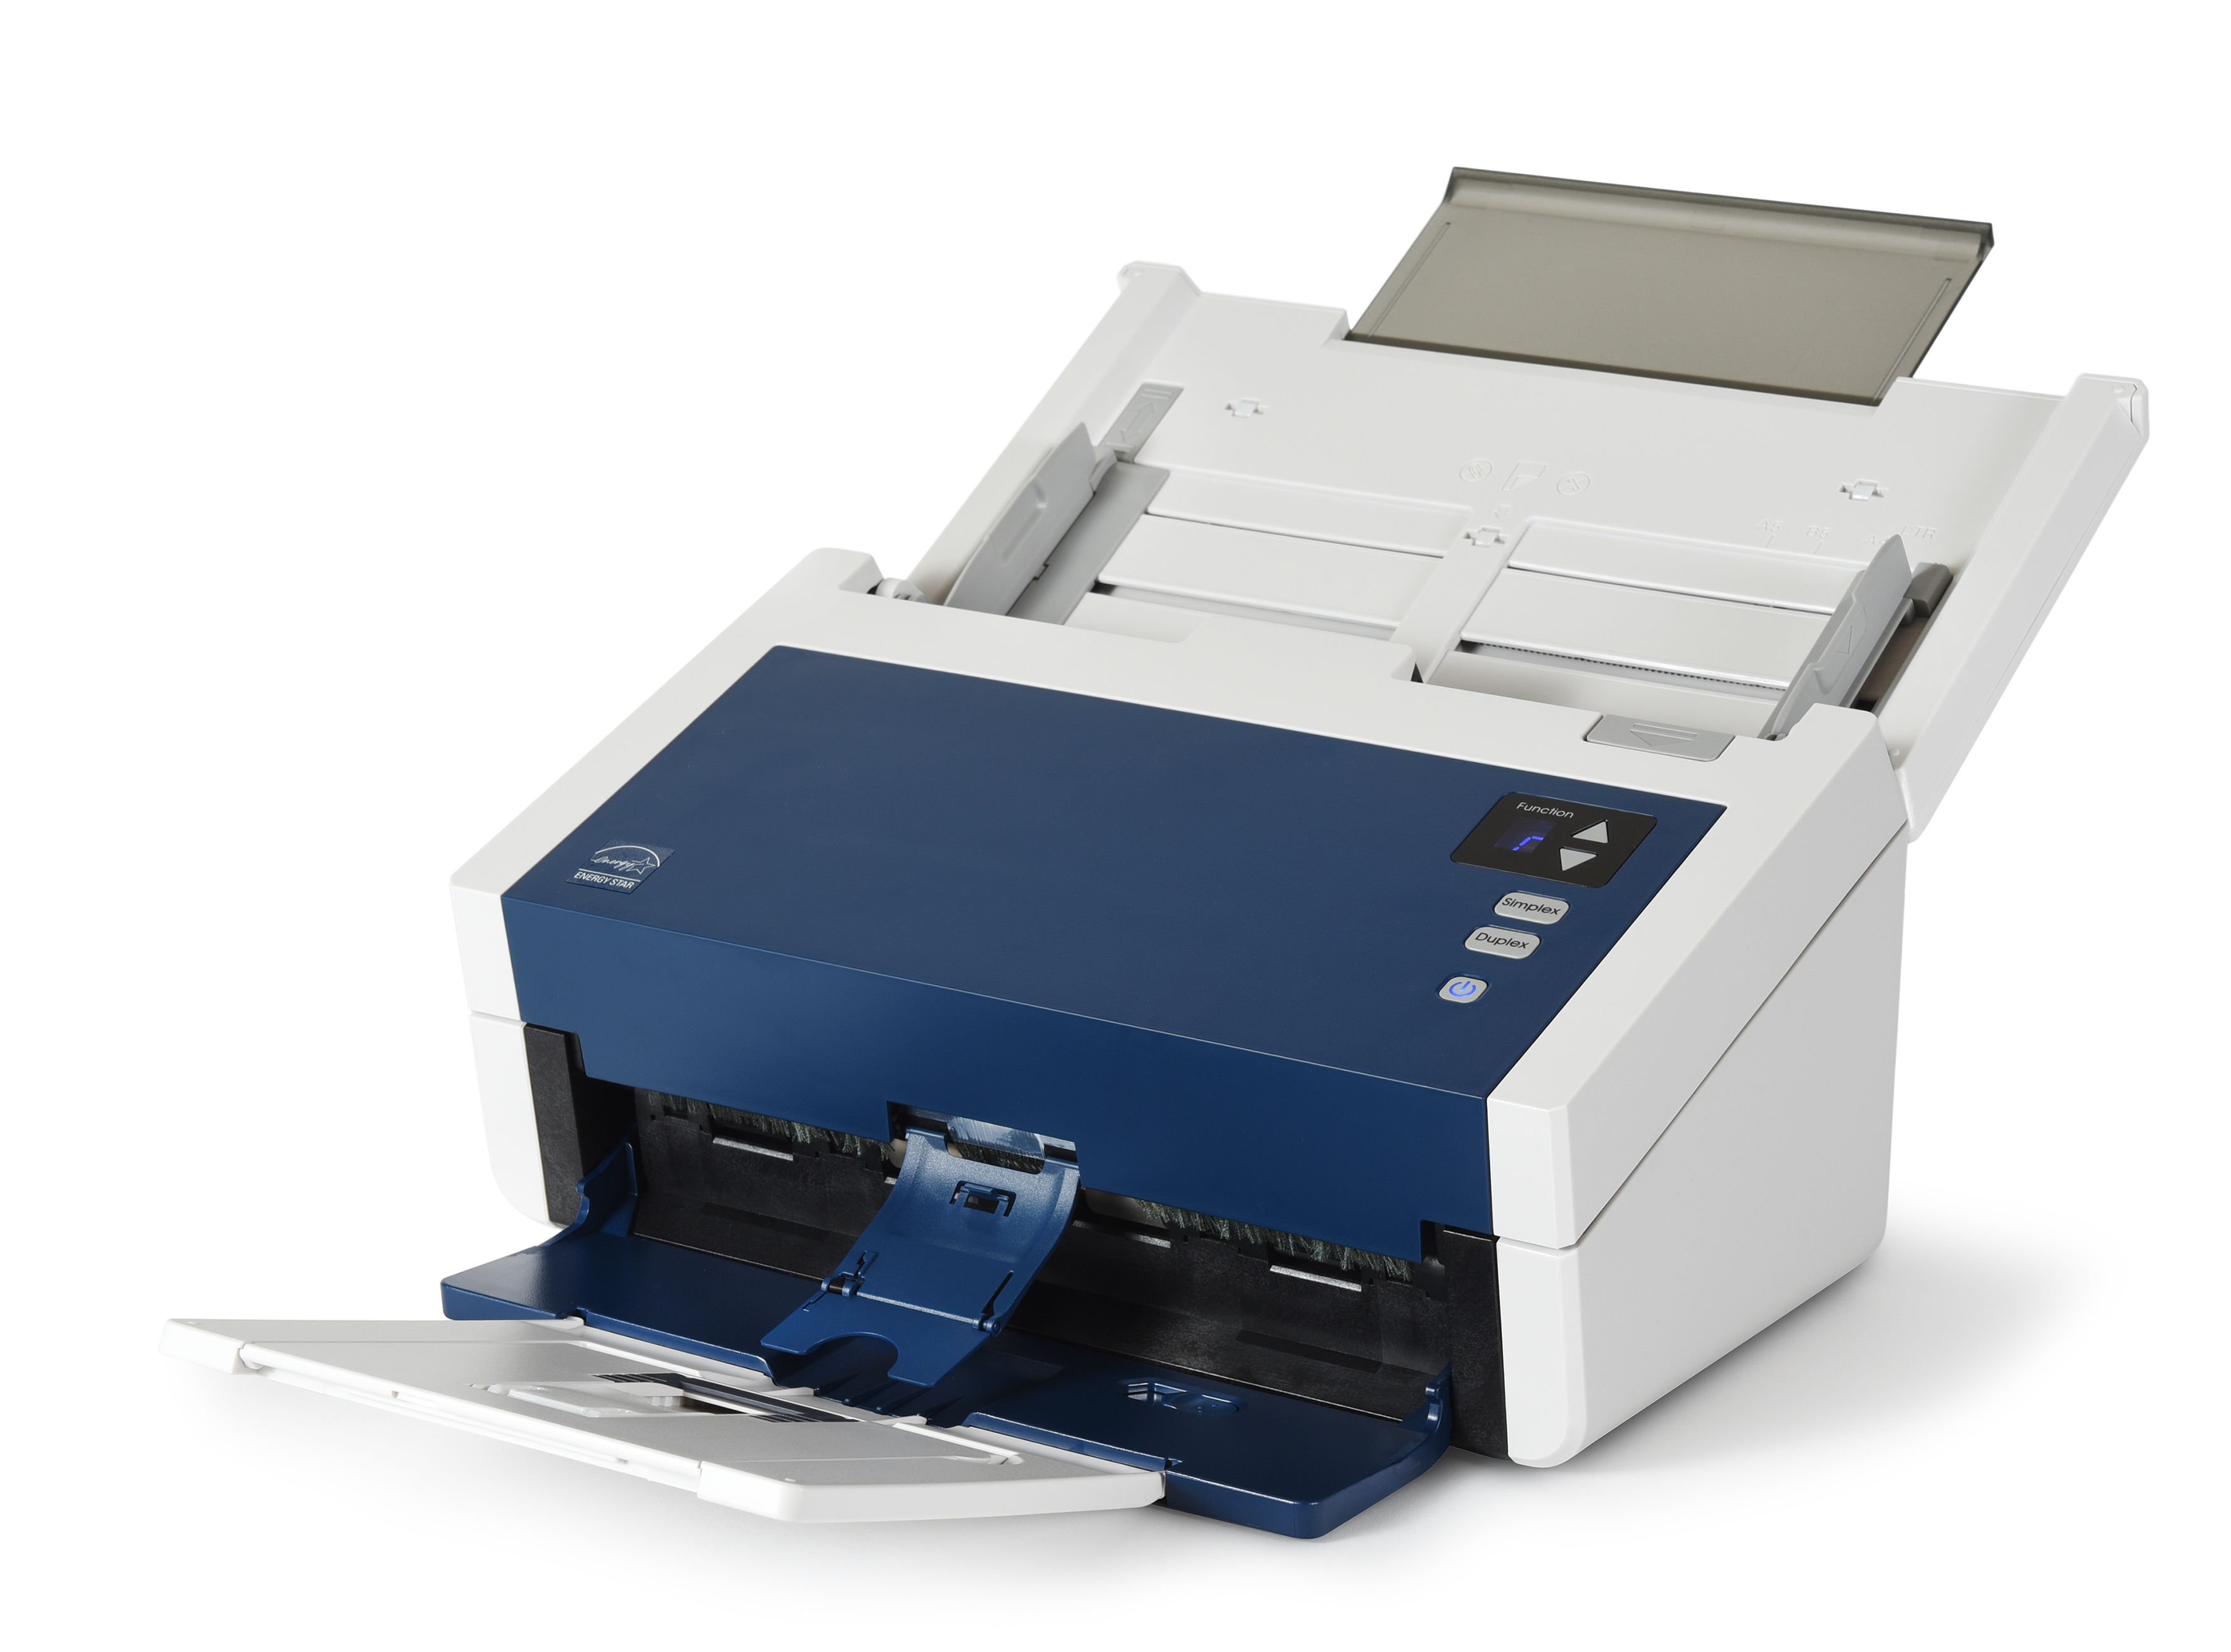 Новые документ-сканеры Xerox DocuMate 6440